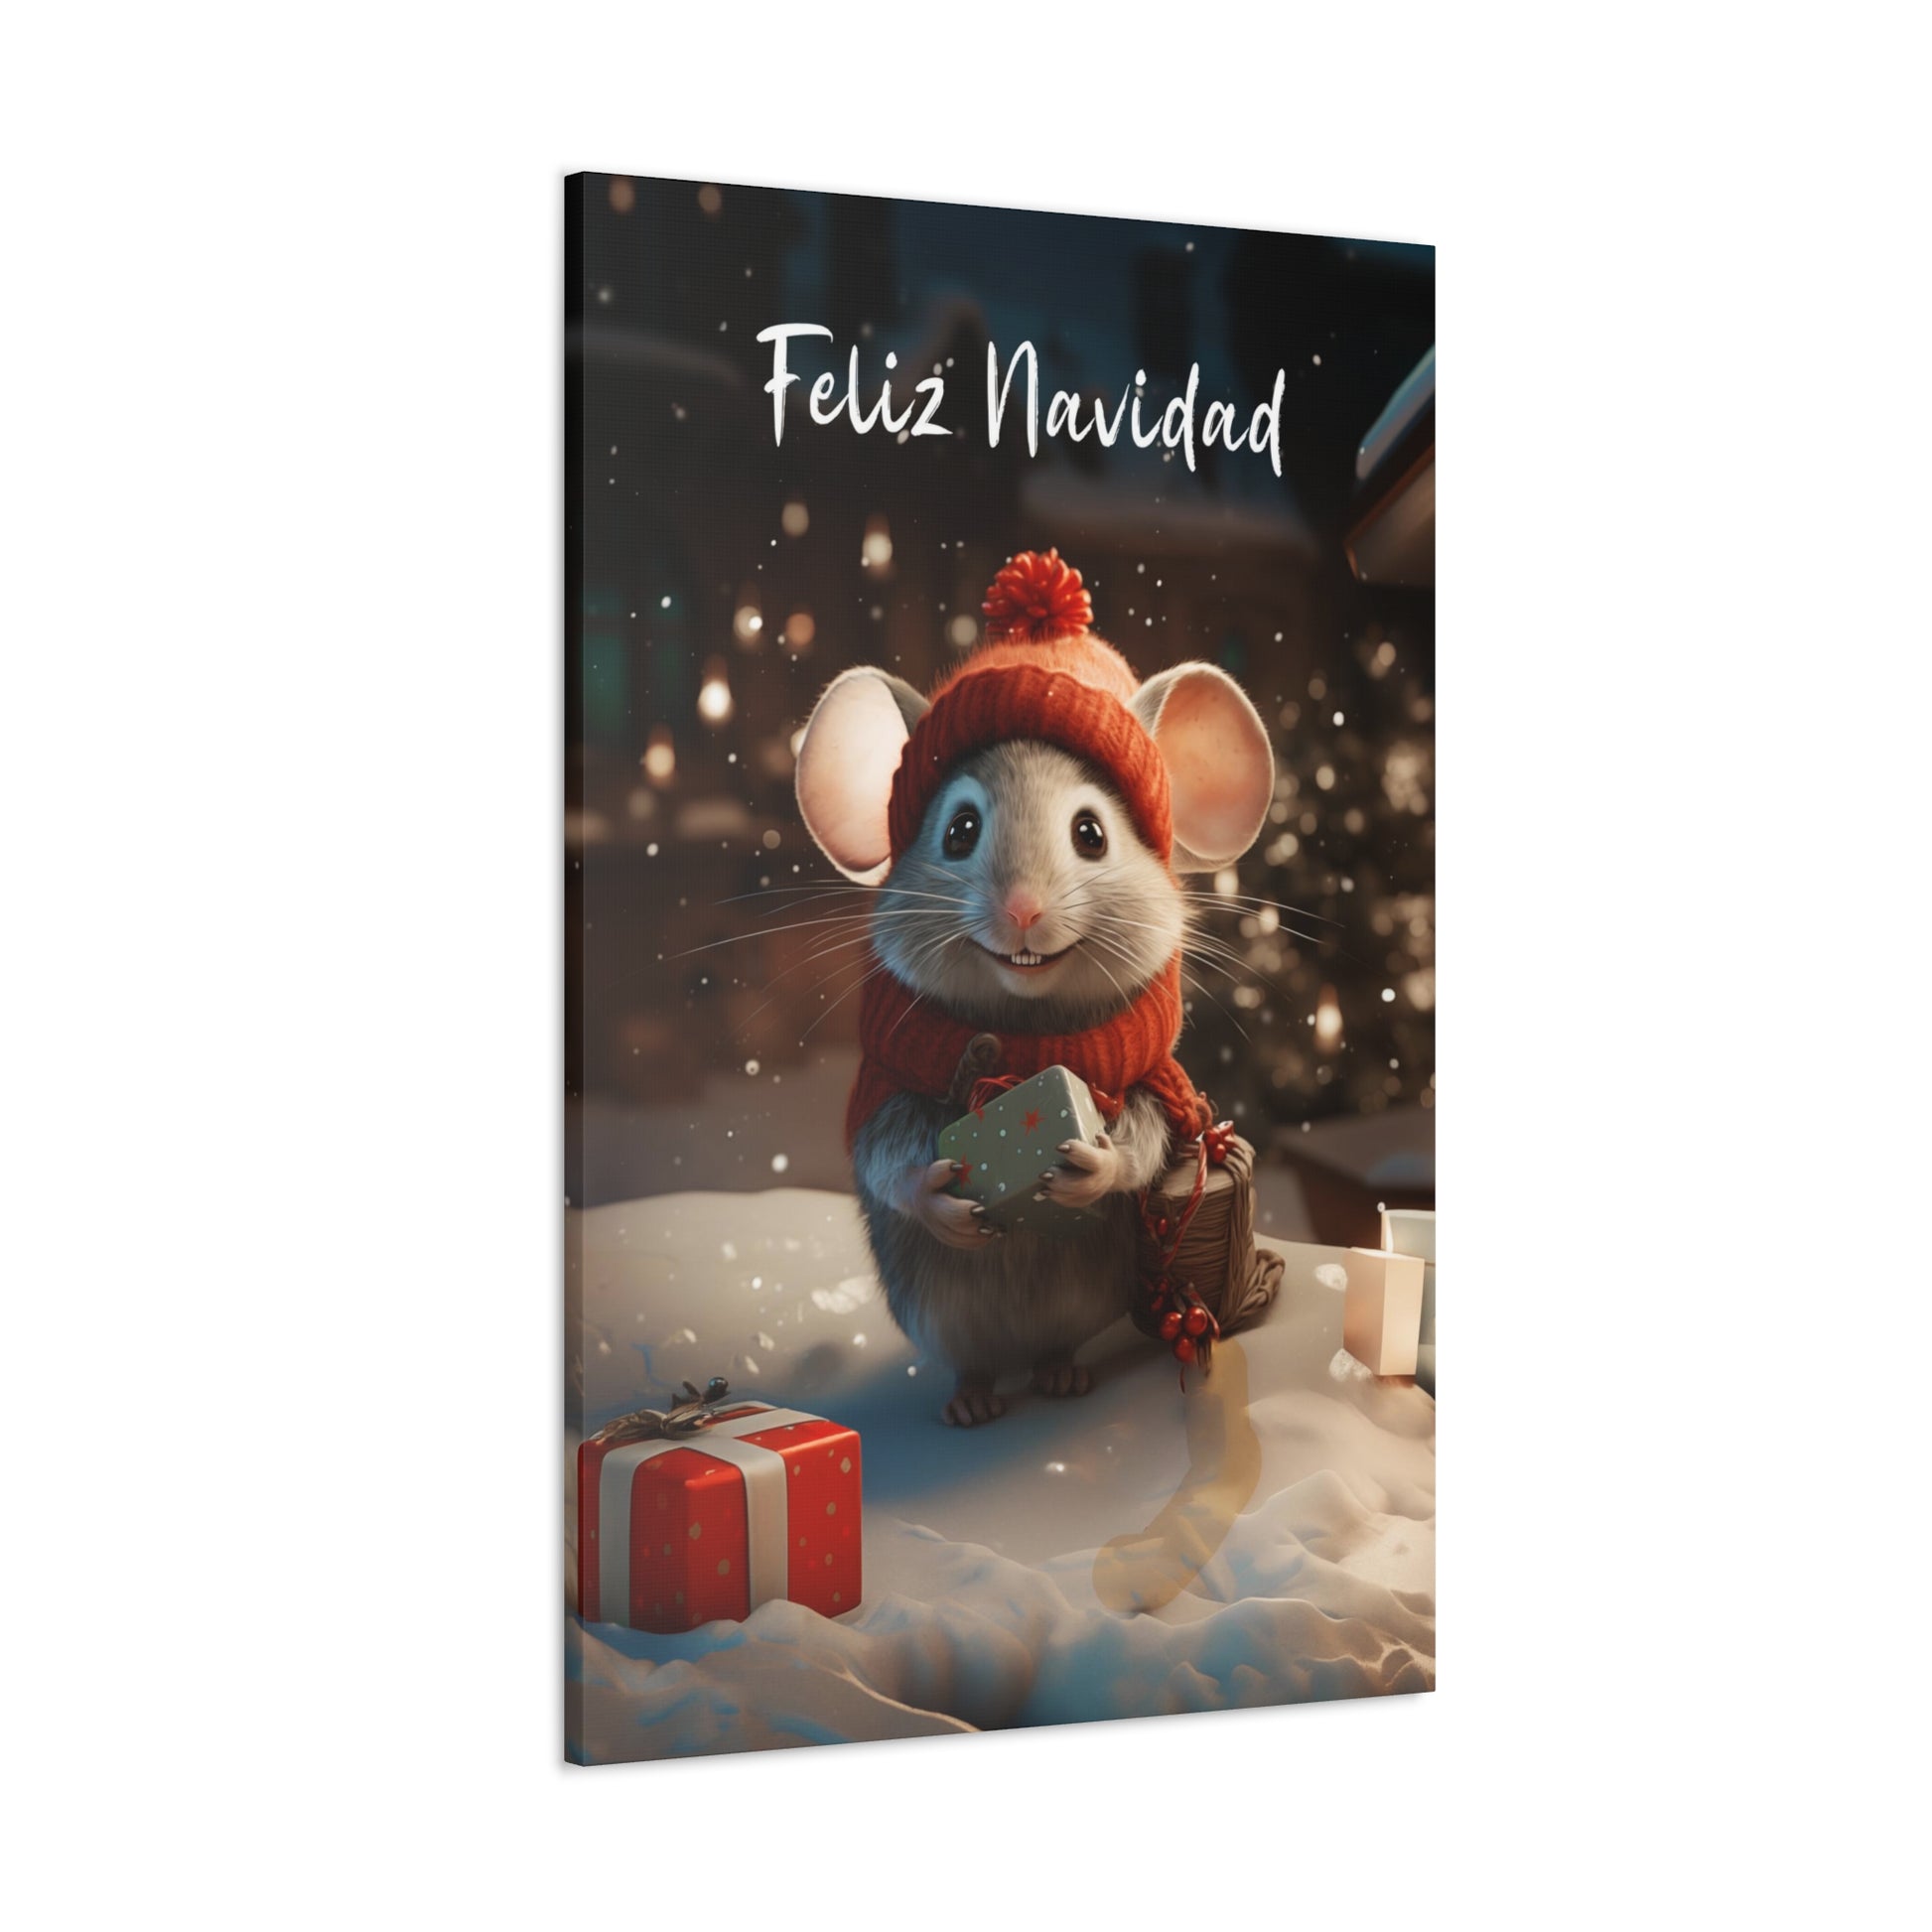 Feliz Navidad mouse art prints